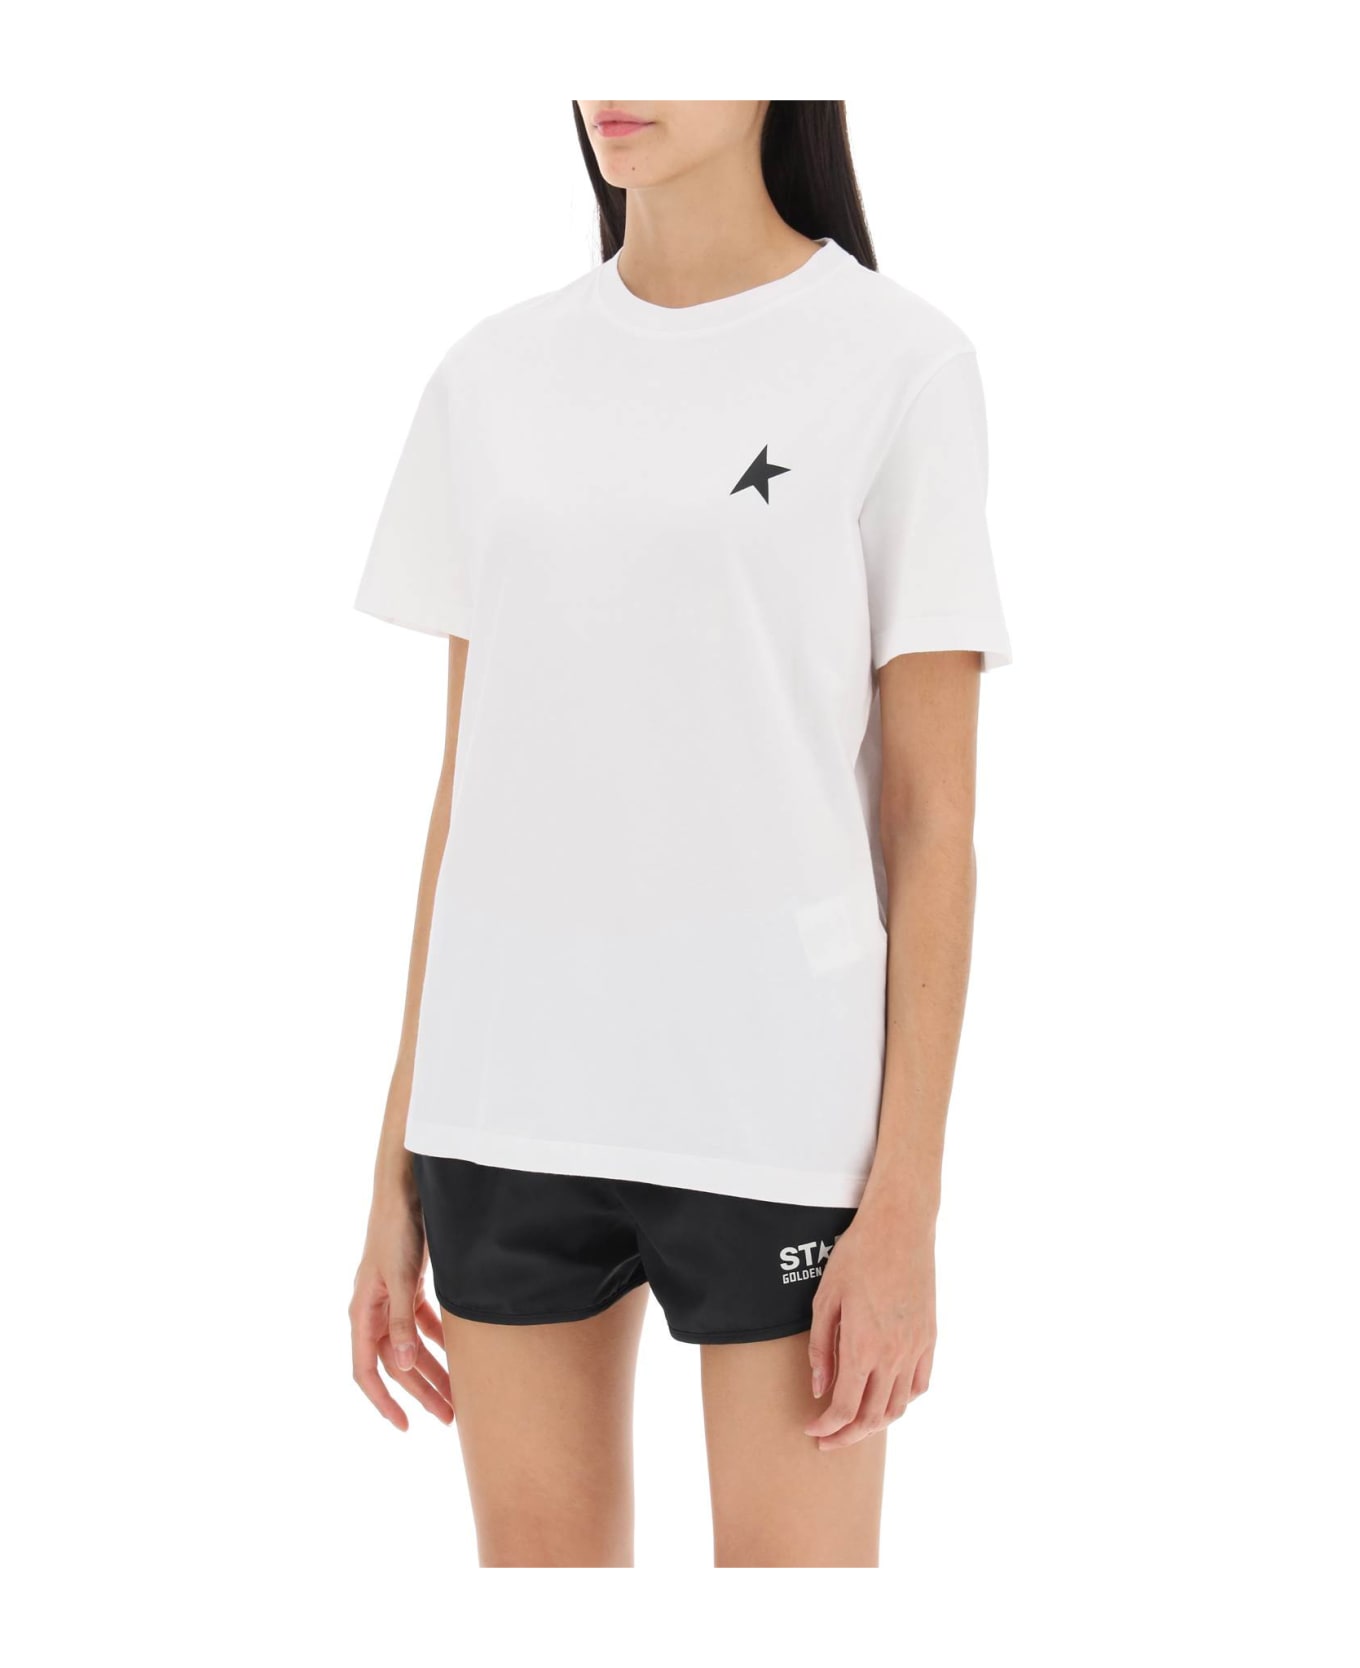 Golden Goose Regular T-shirt With Star Logo - OPTIC WHITE BLACK (Black)